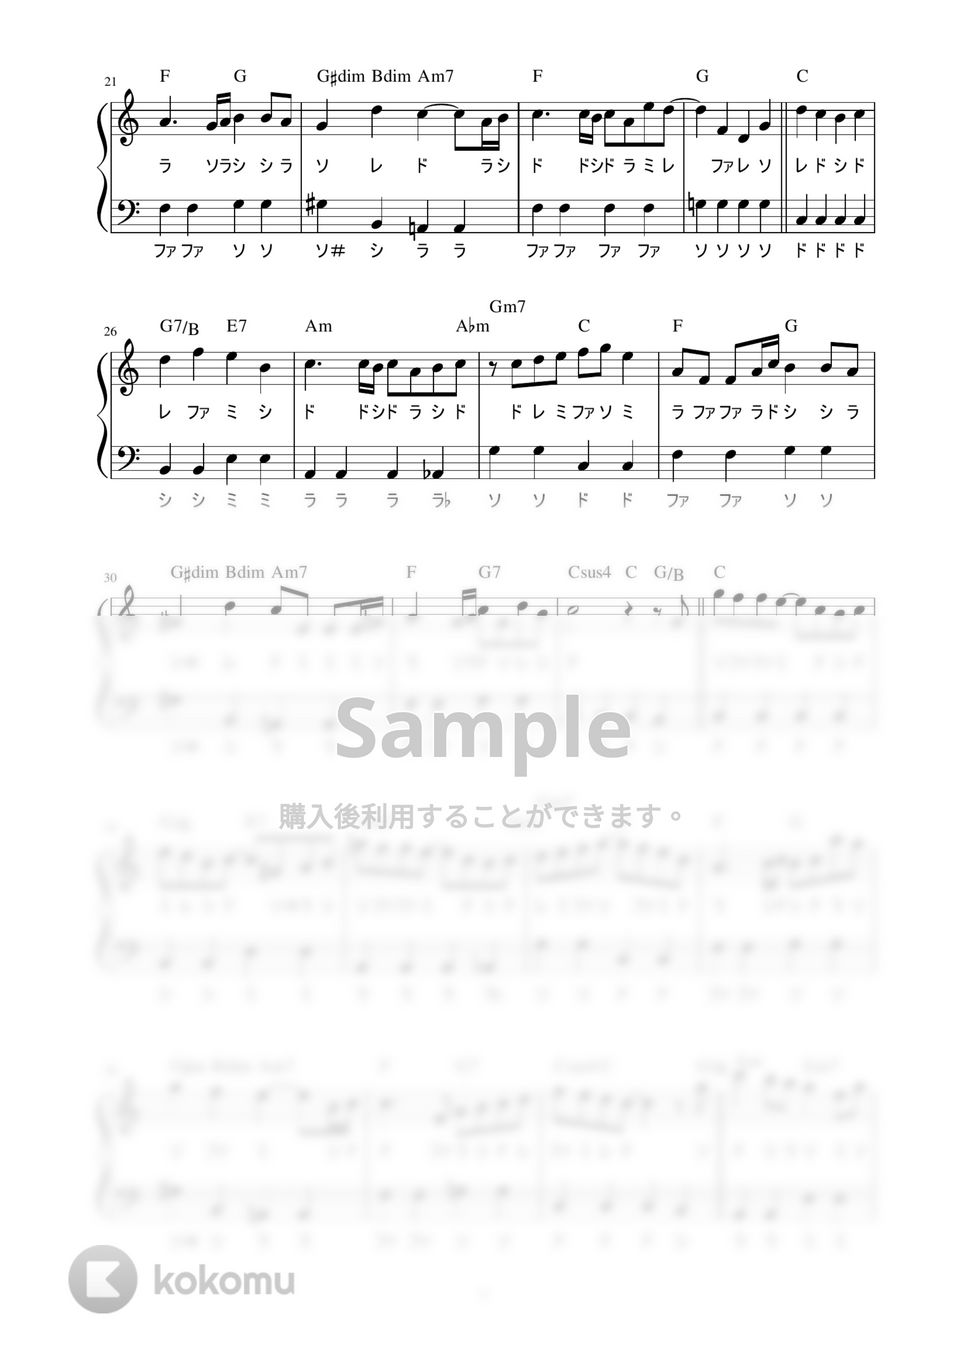 Ken Arai - Far Away (かんたん / 歌詞付き / ドレミ付き / 初心者) by piano.tokyo